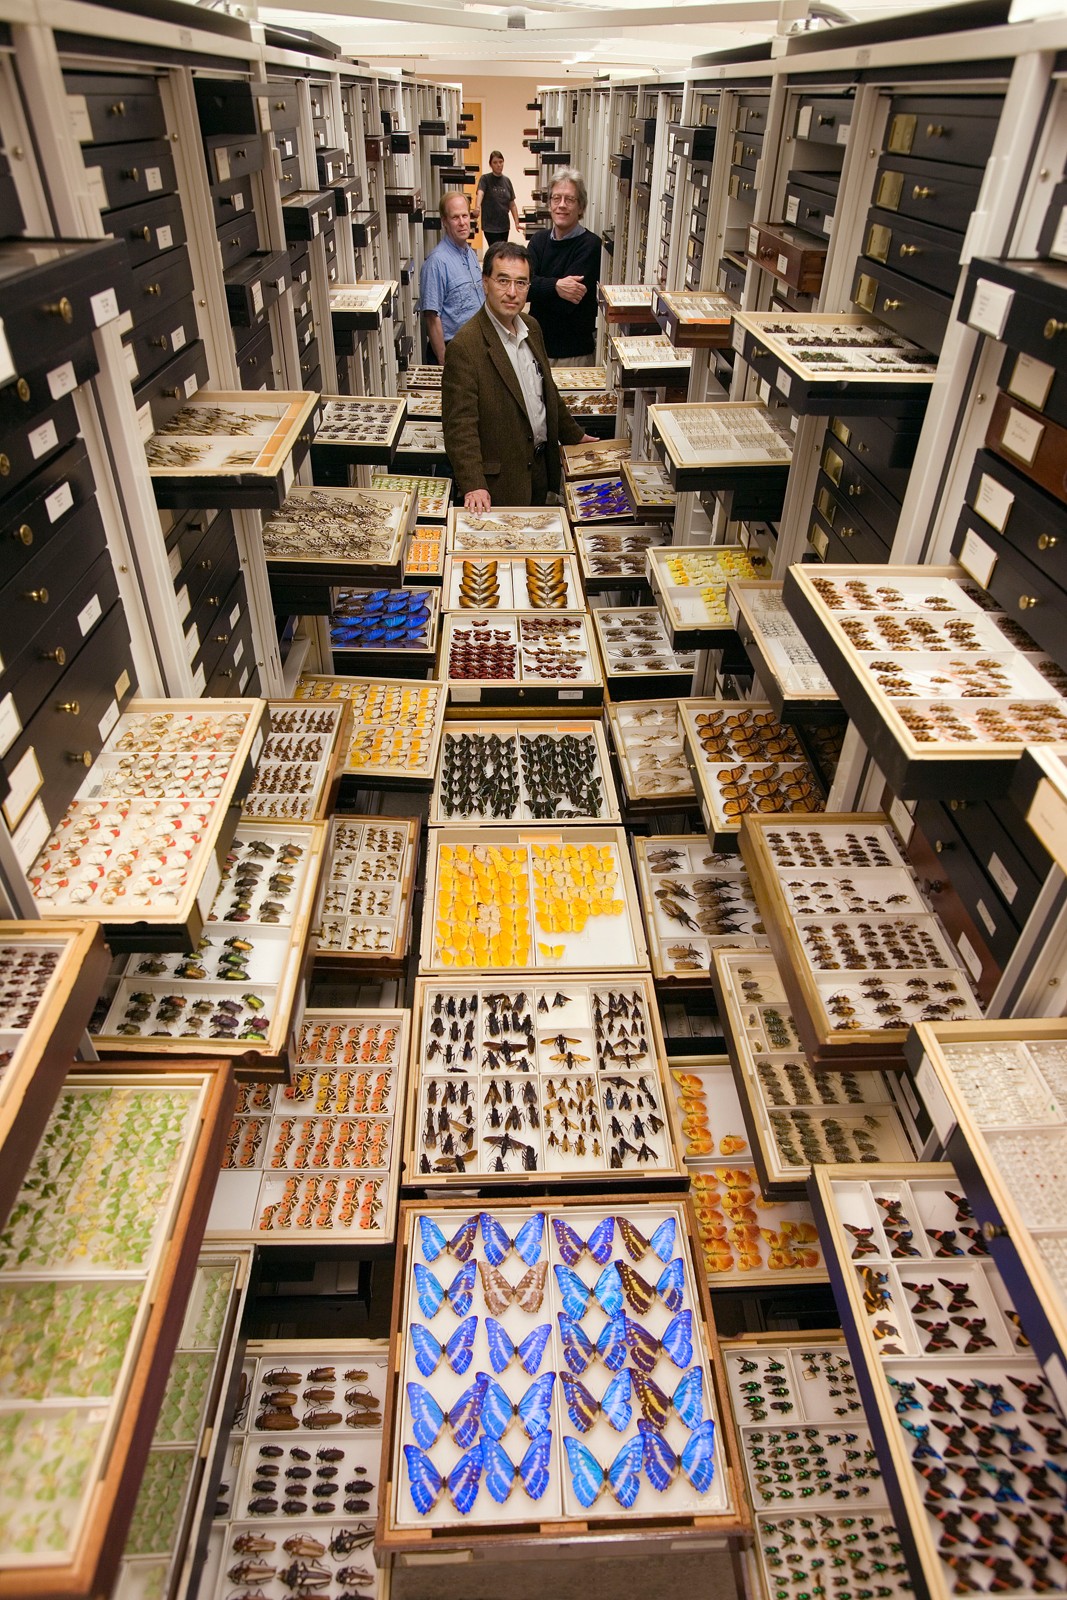 Setor de Entomologia do museu, o responsável pelo armazenamento e estudo das borboletas (Foto: Divulgação/Smithsonian Institute)